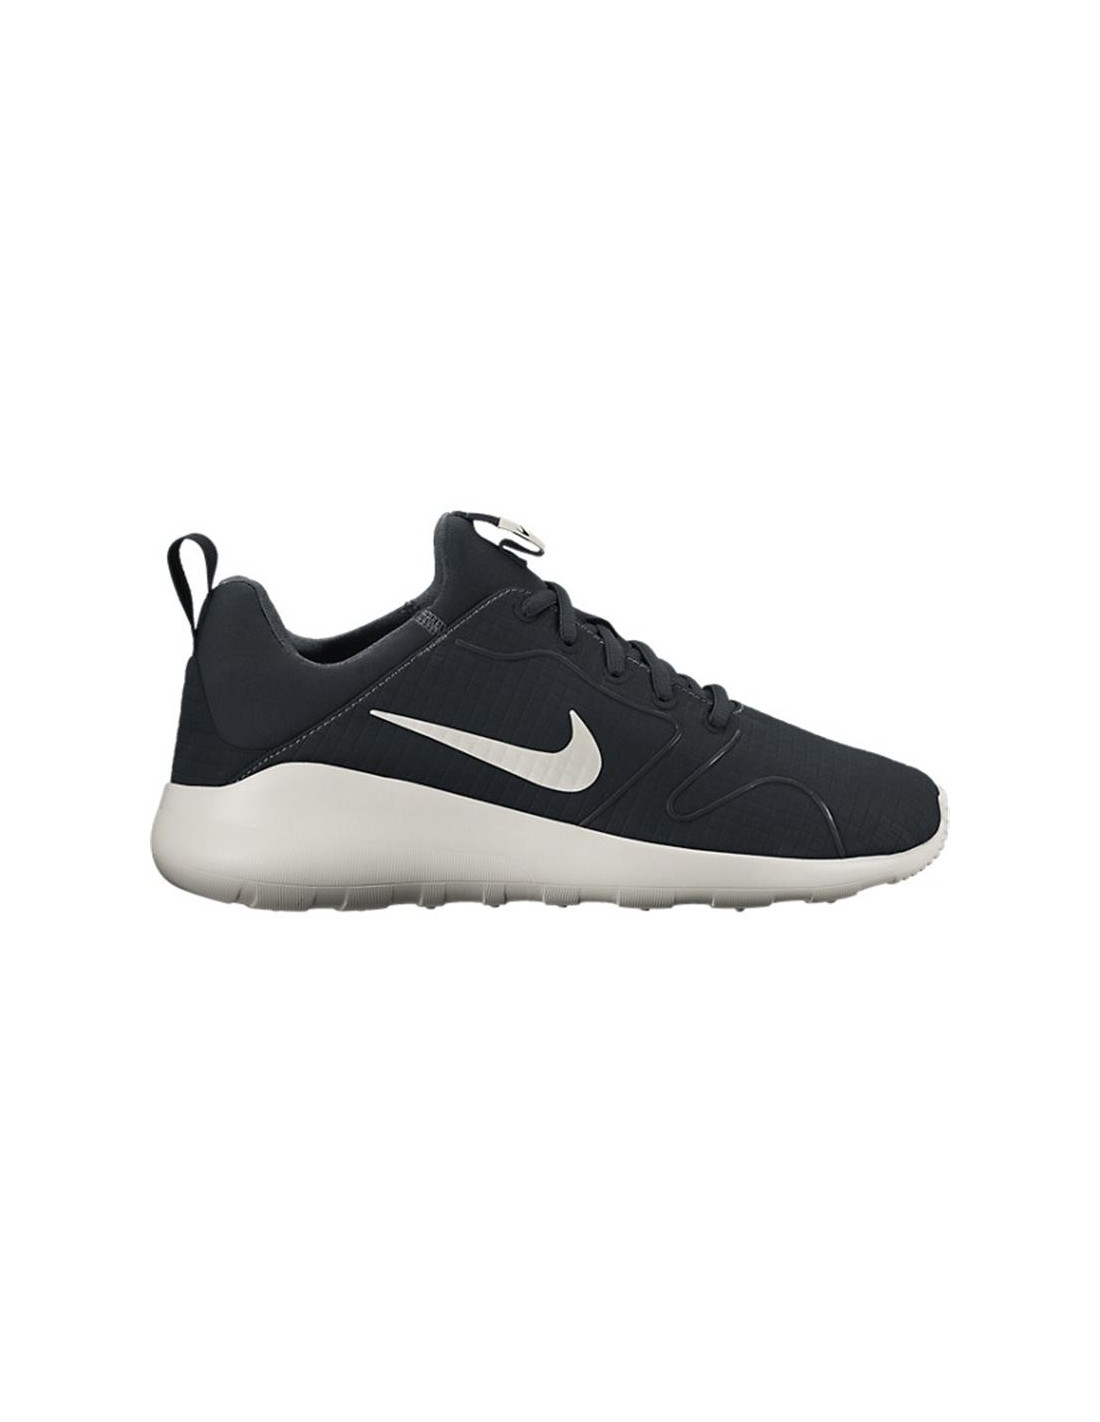 Nuevo Zapatillas Nike Sportswear | Online a Precios Super Baratos